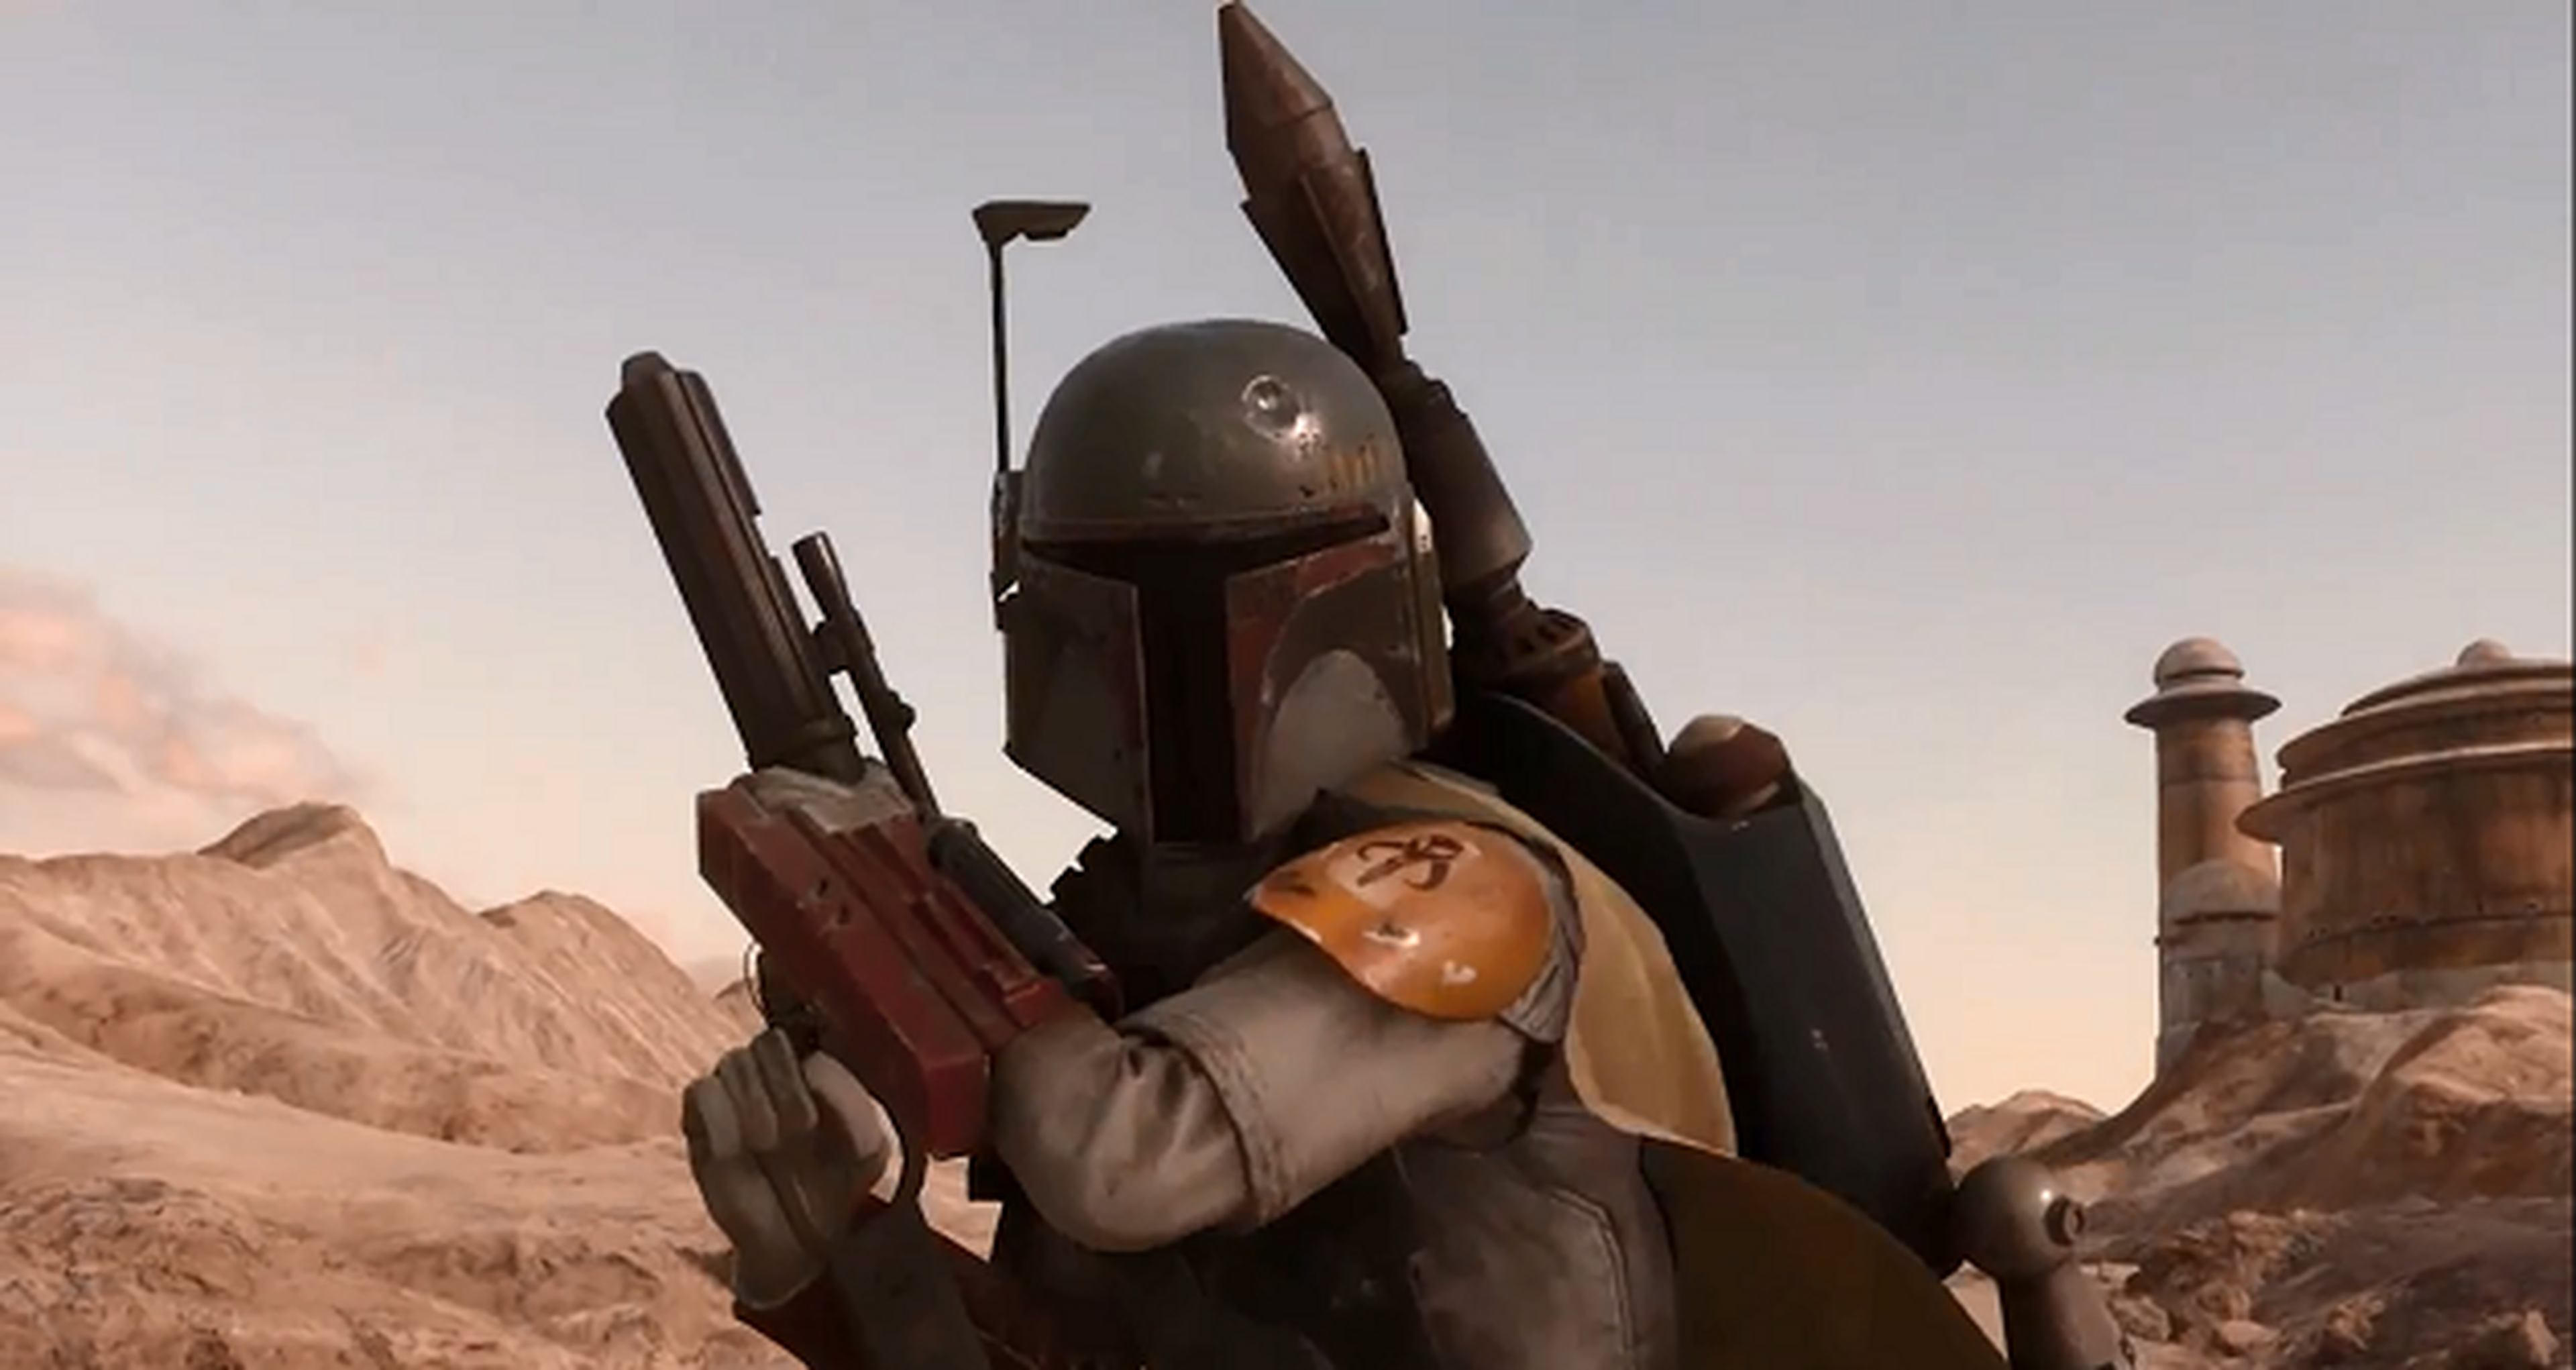 Star Wars Battlefront - Electronic Arts explica el verdadero motivo de no incluir campaña